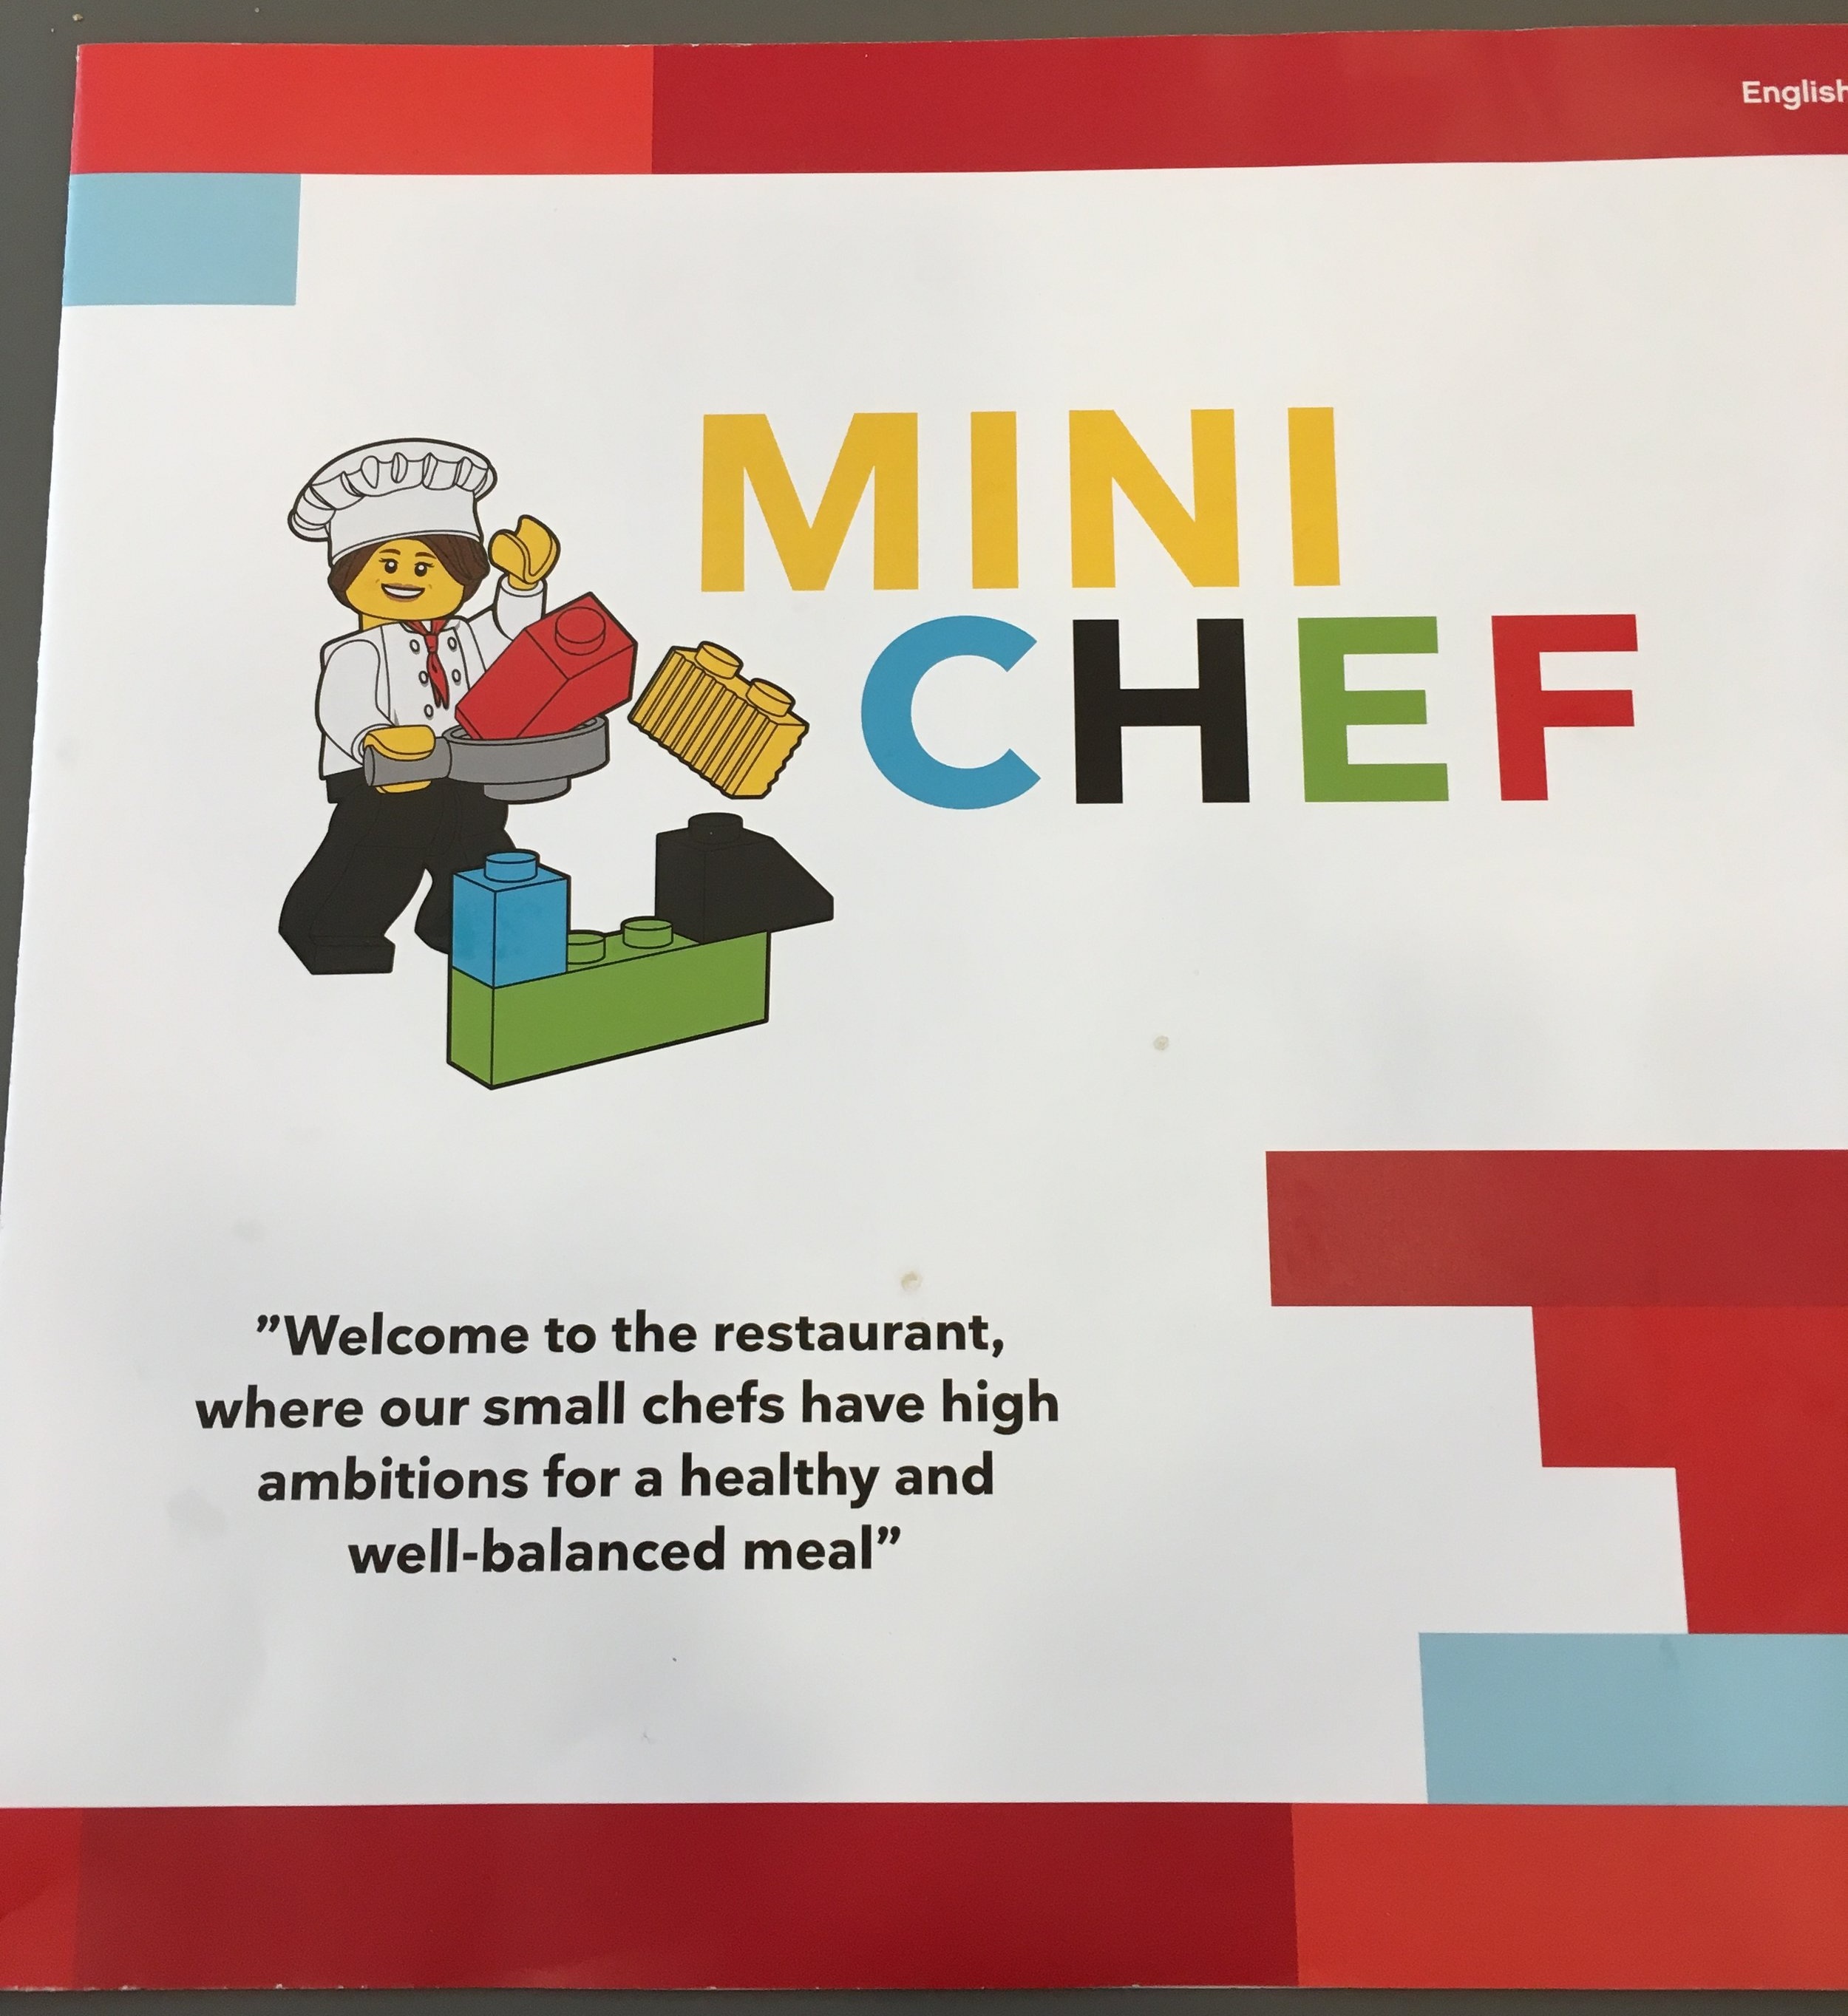 Mini chef